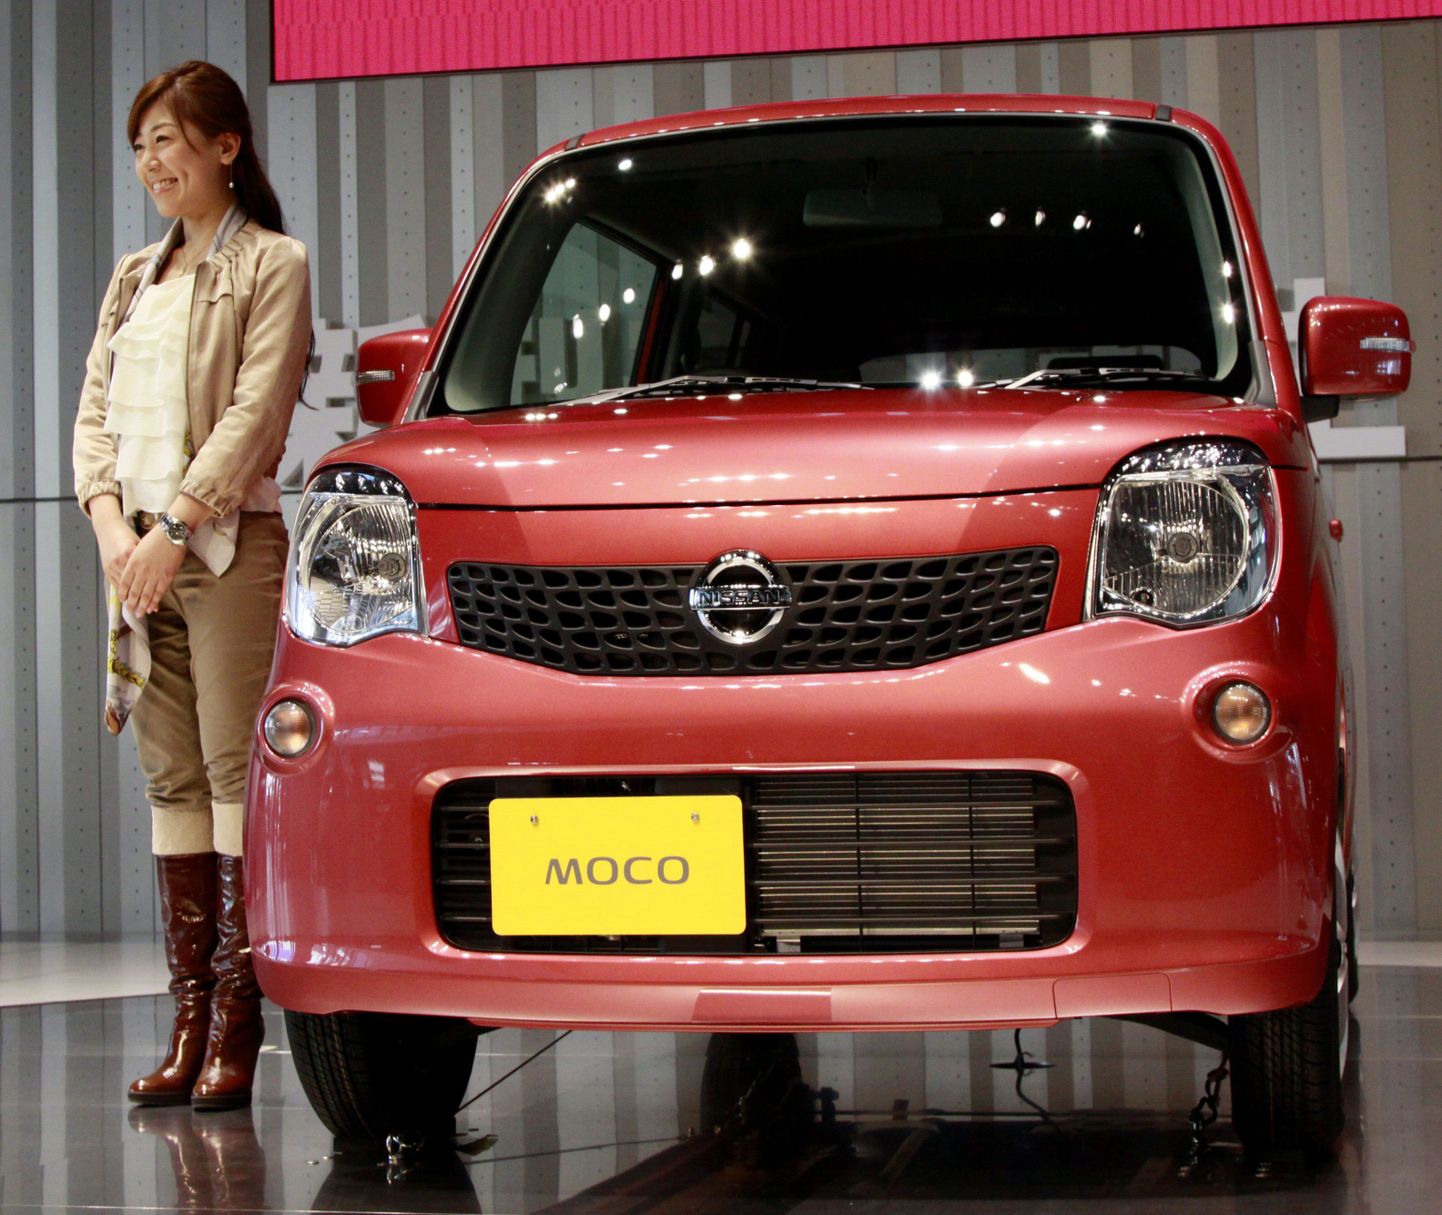 Презентация Nissan Moco в Йокогаме.